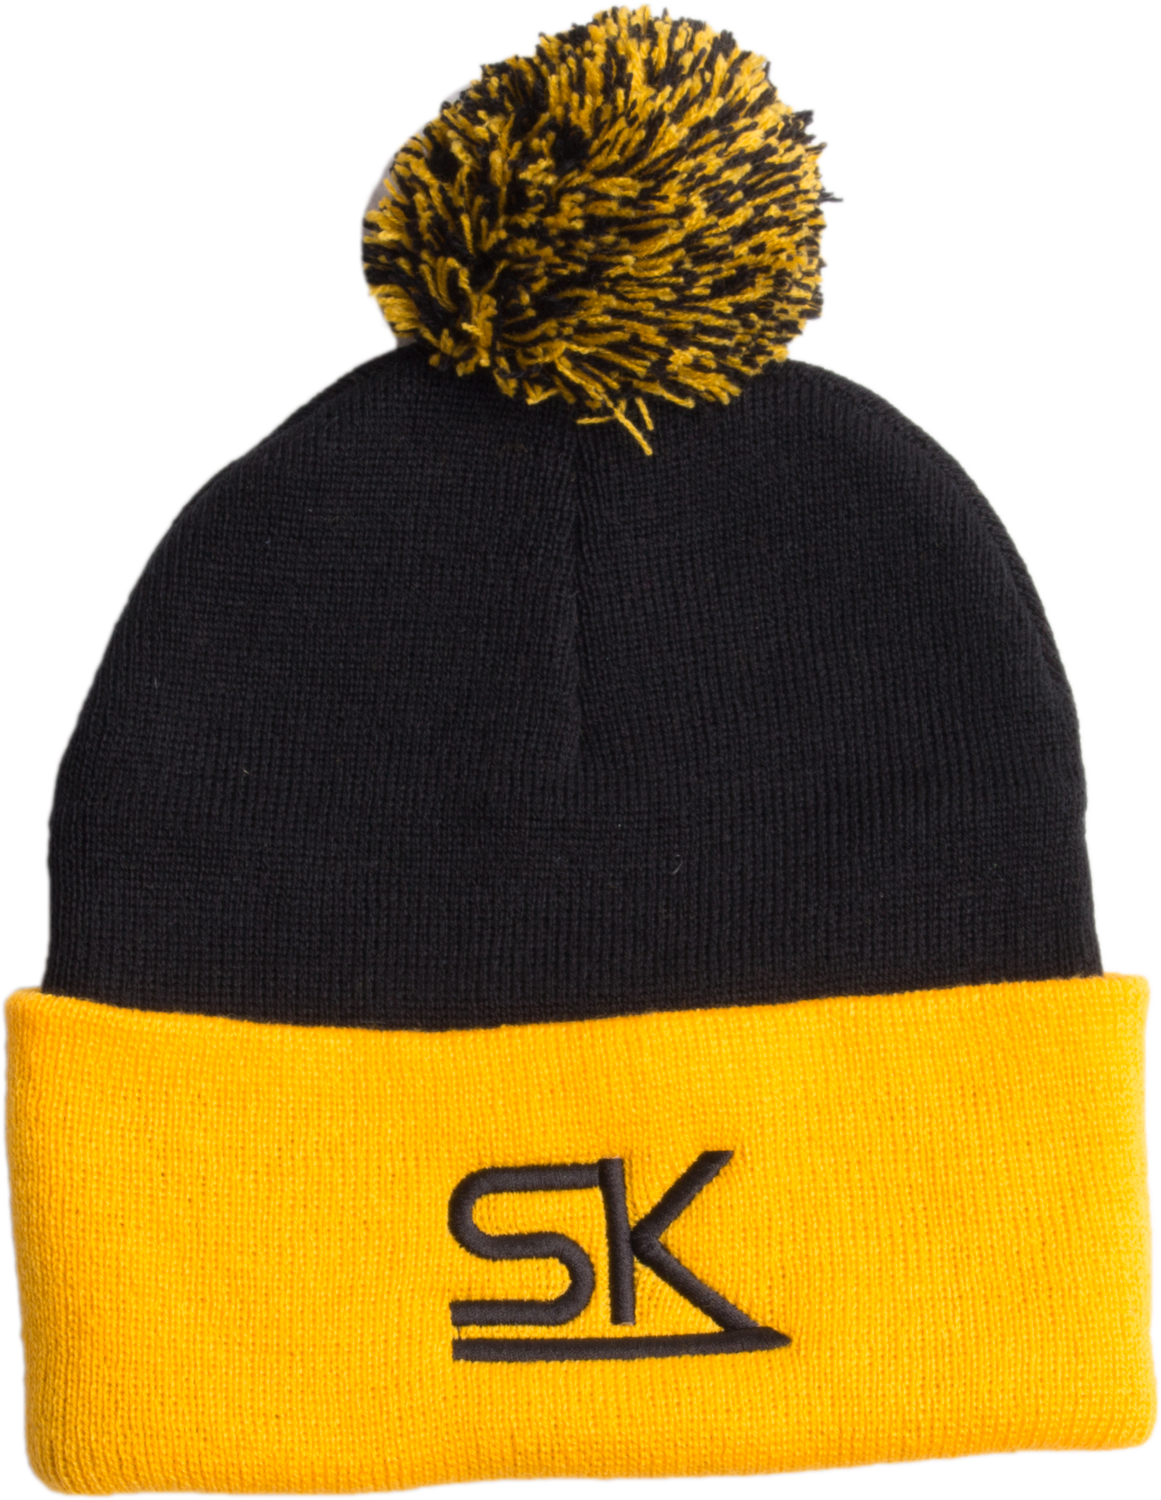 Team StarKid - Gold and Black Winter Pom Hat